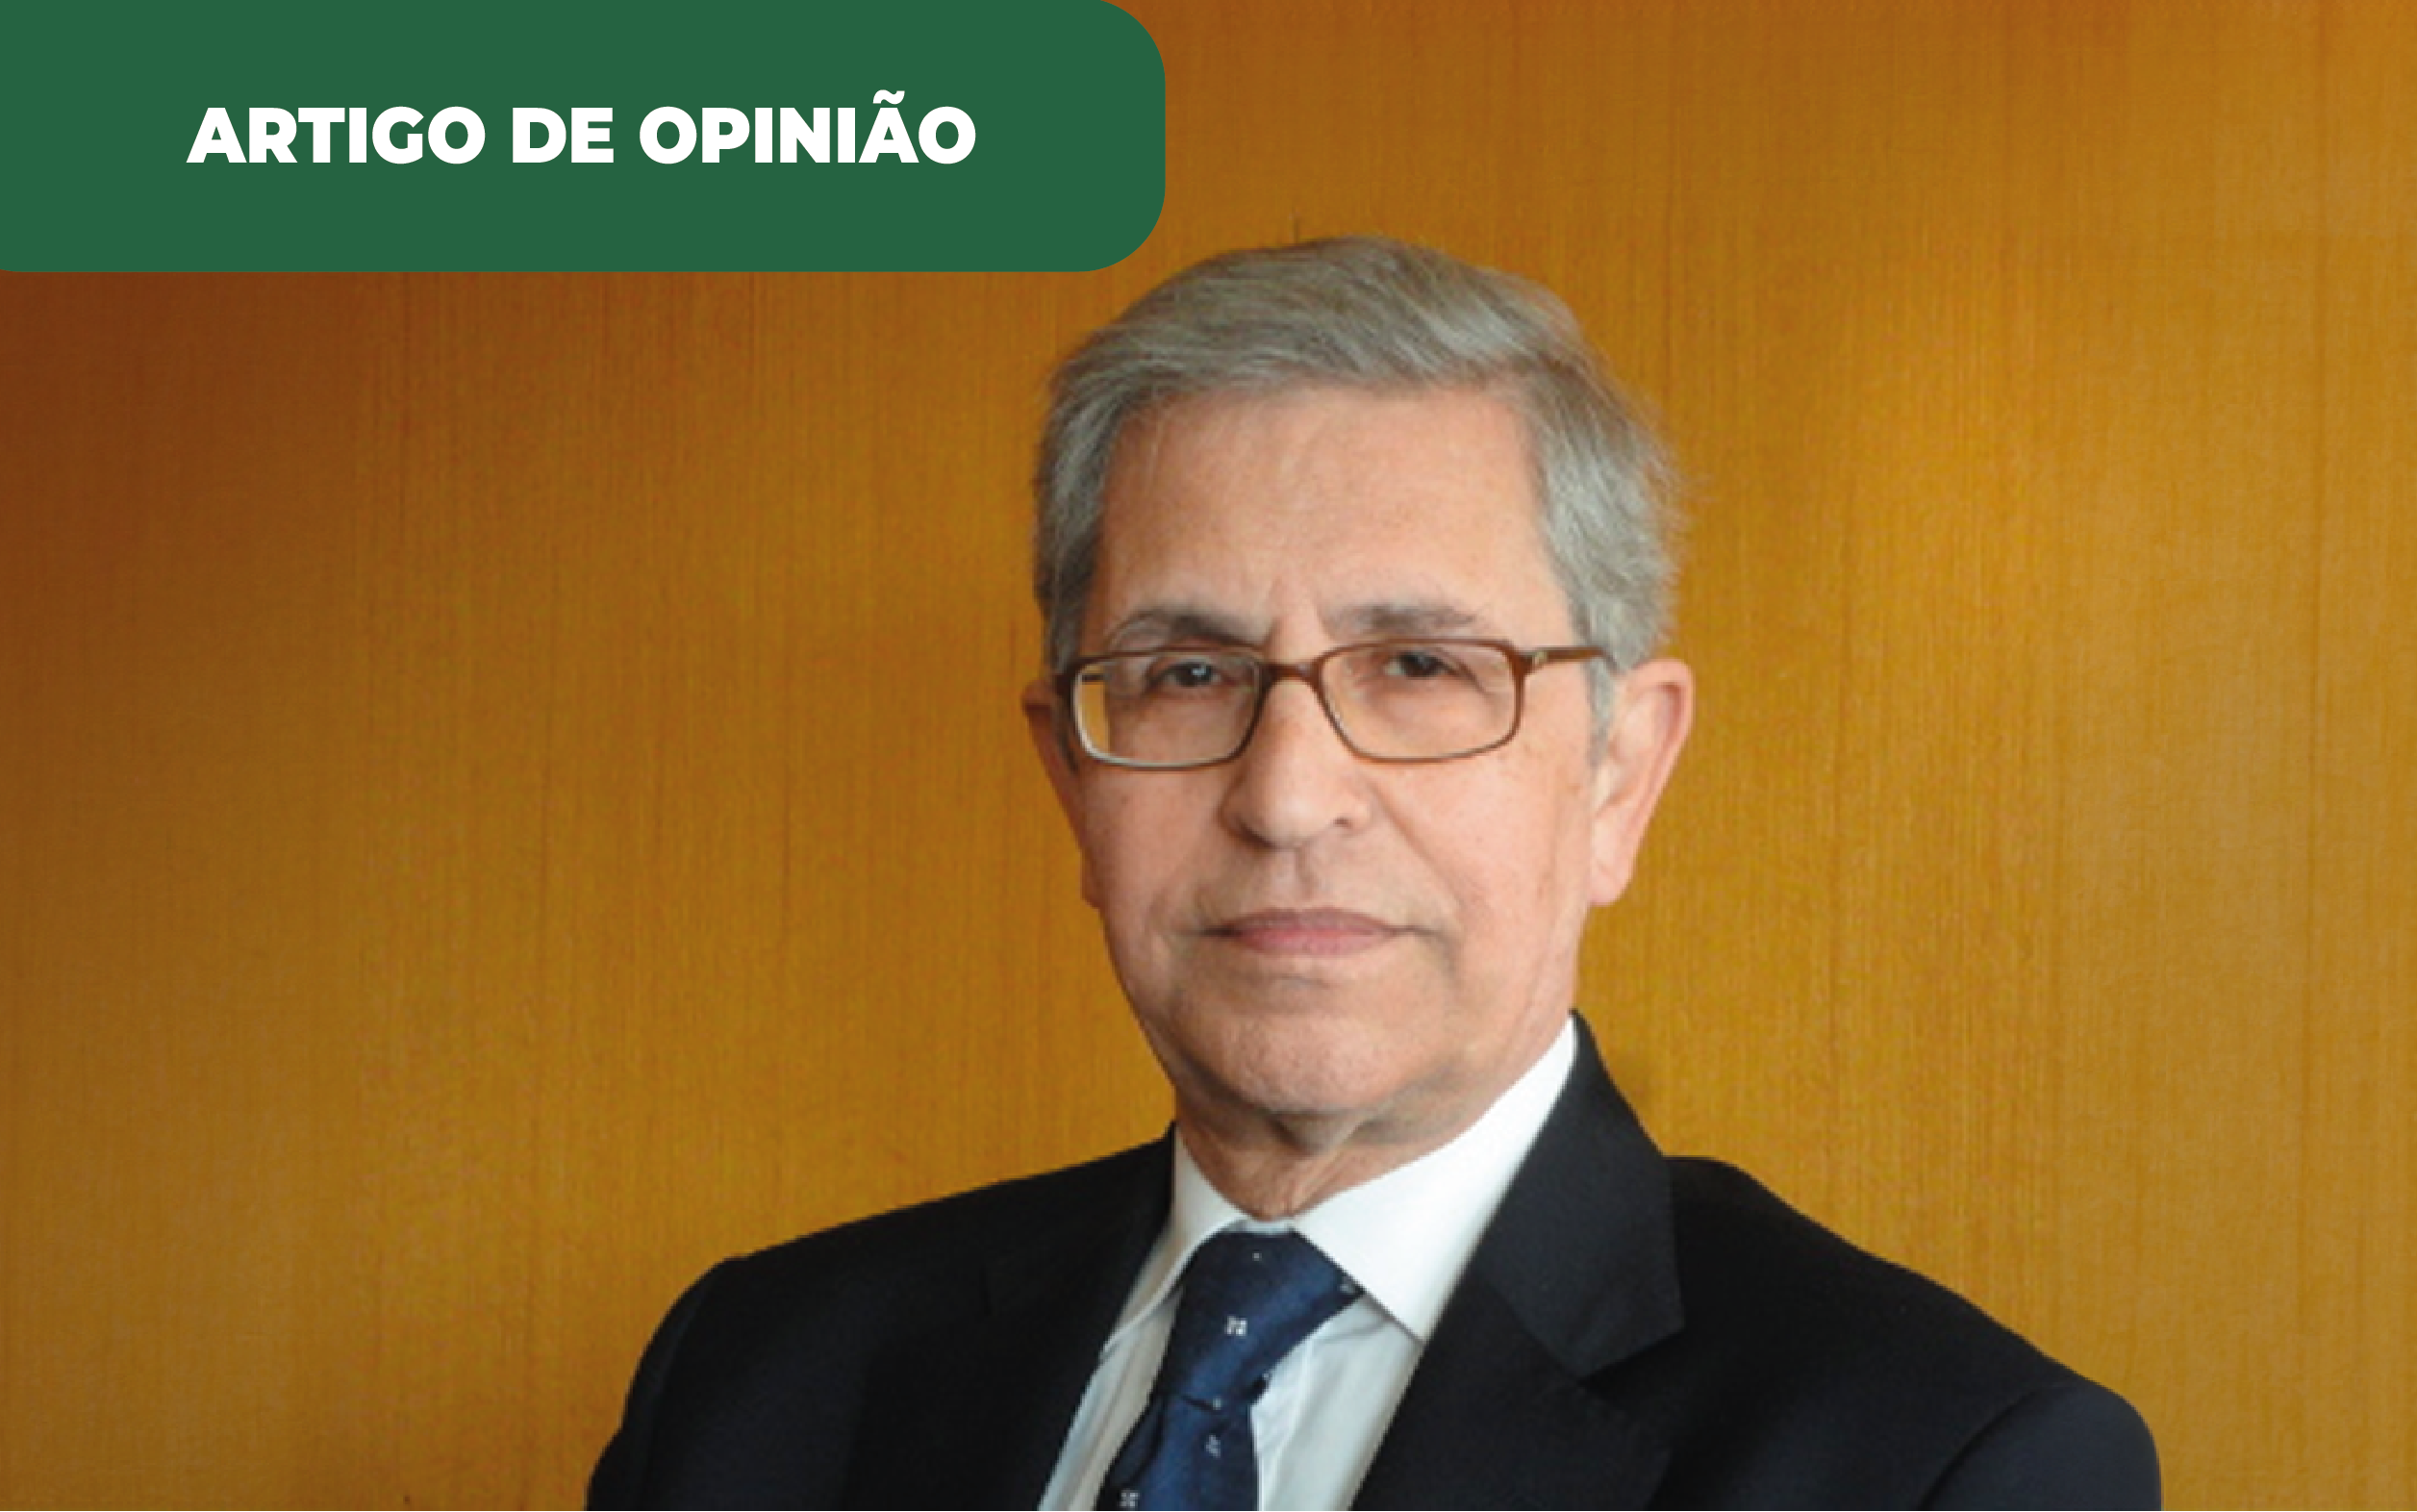 Fotografia colorida de Jaime Braga, secretário-geral da Associação Portuguesa de Produtores de Biocombustível, que assina o artigo de opinião sobre metas para a descarbonização.